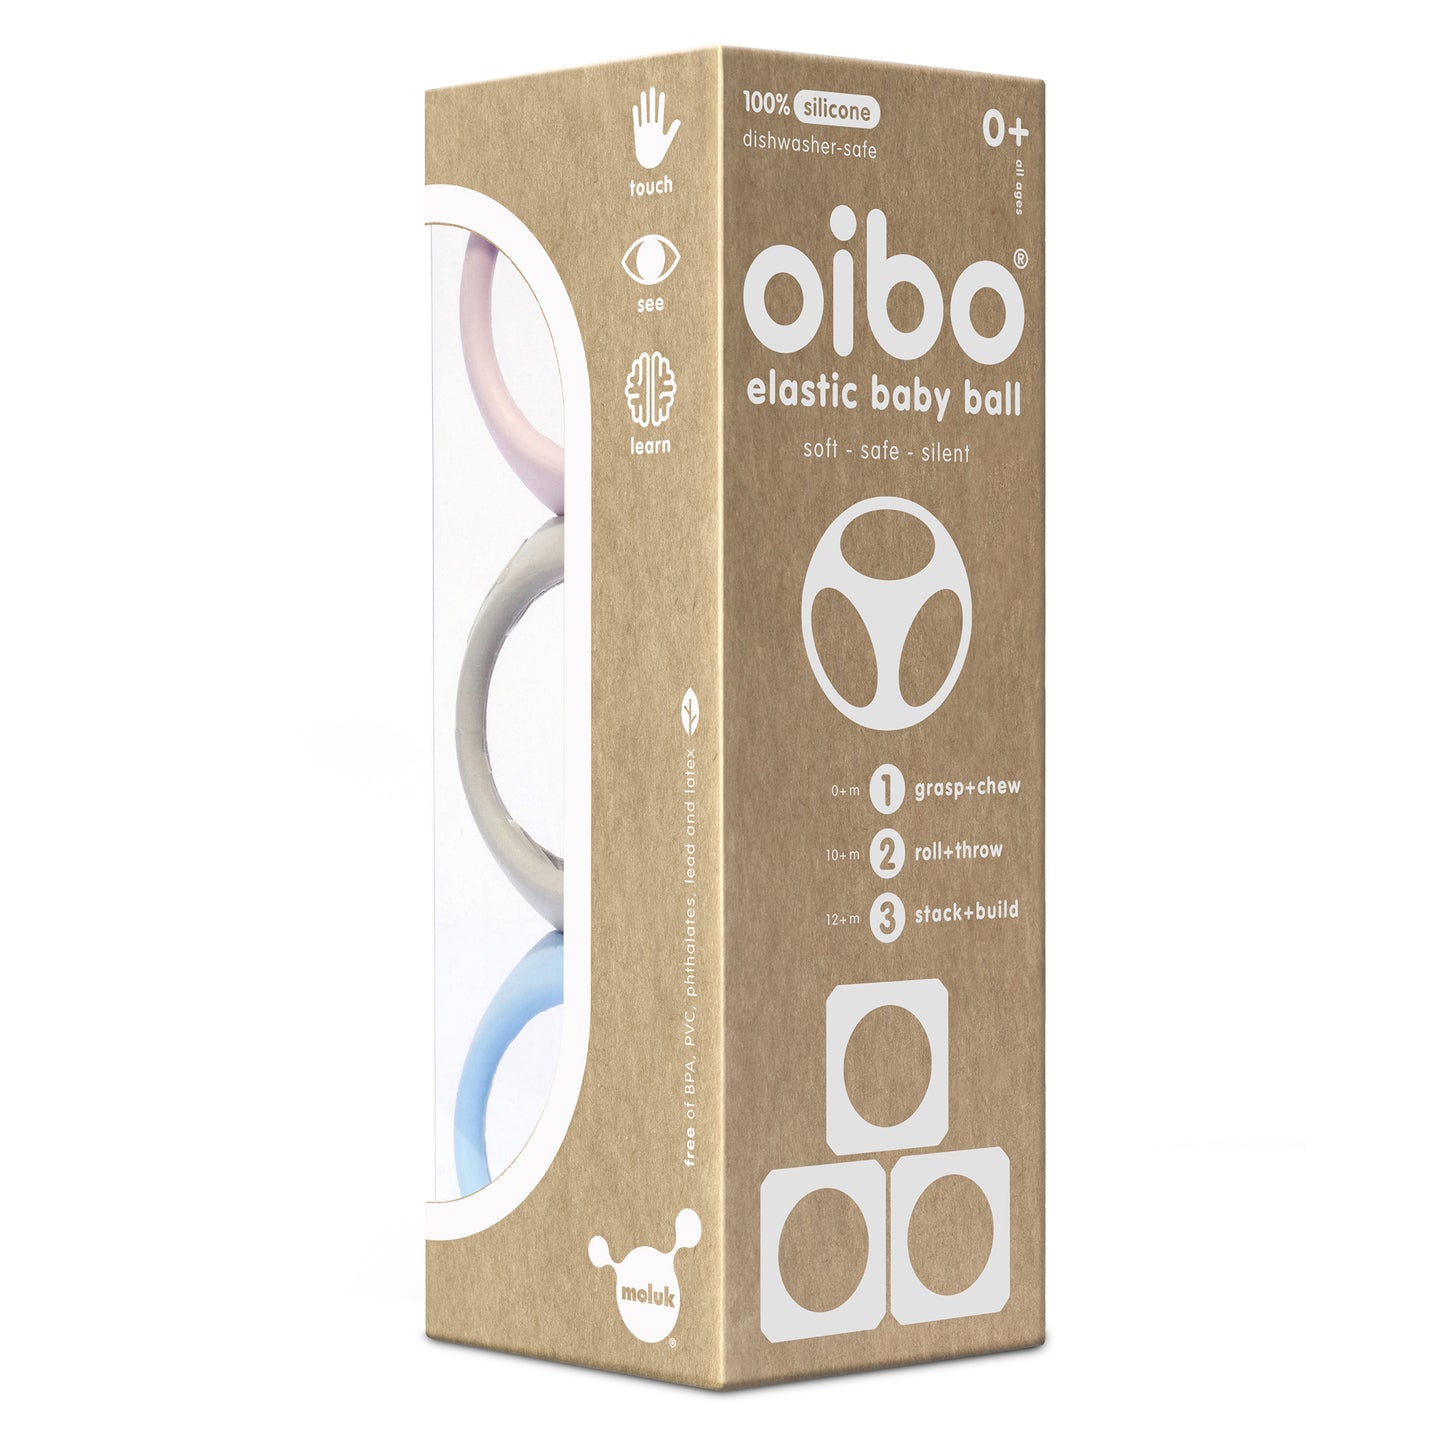 Oibo - 3 piezas